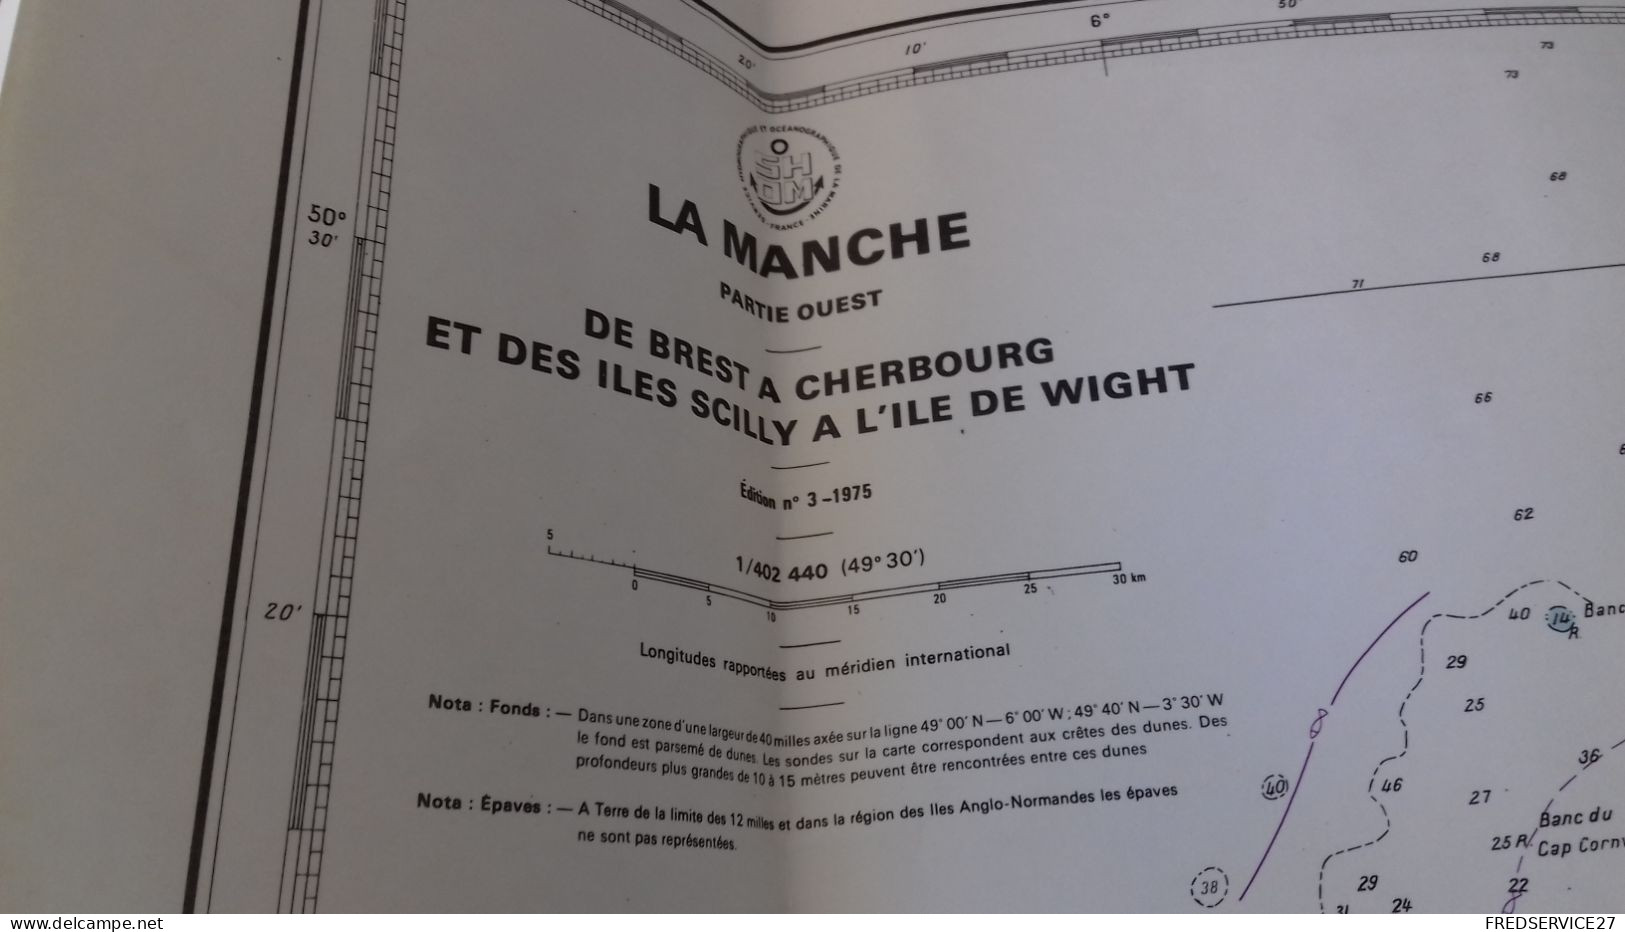 124/ LA MANCHE PARTIE OUEST DE BREST A CHERBOURG ET DES ILES SCILLY A L ILE DE WIGHT 1975 - Seekarten